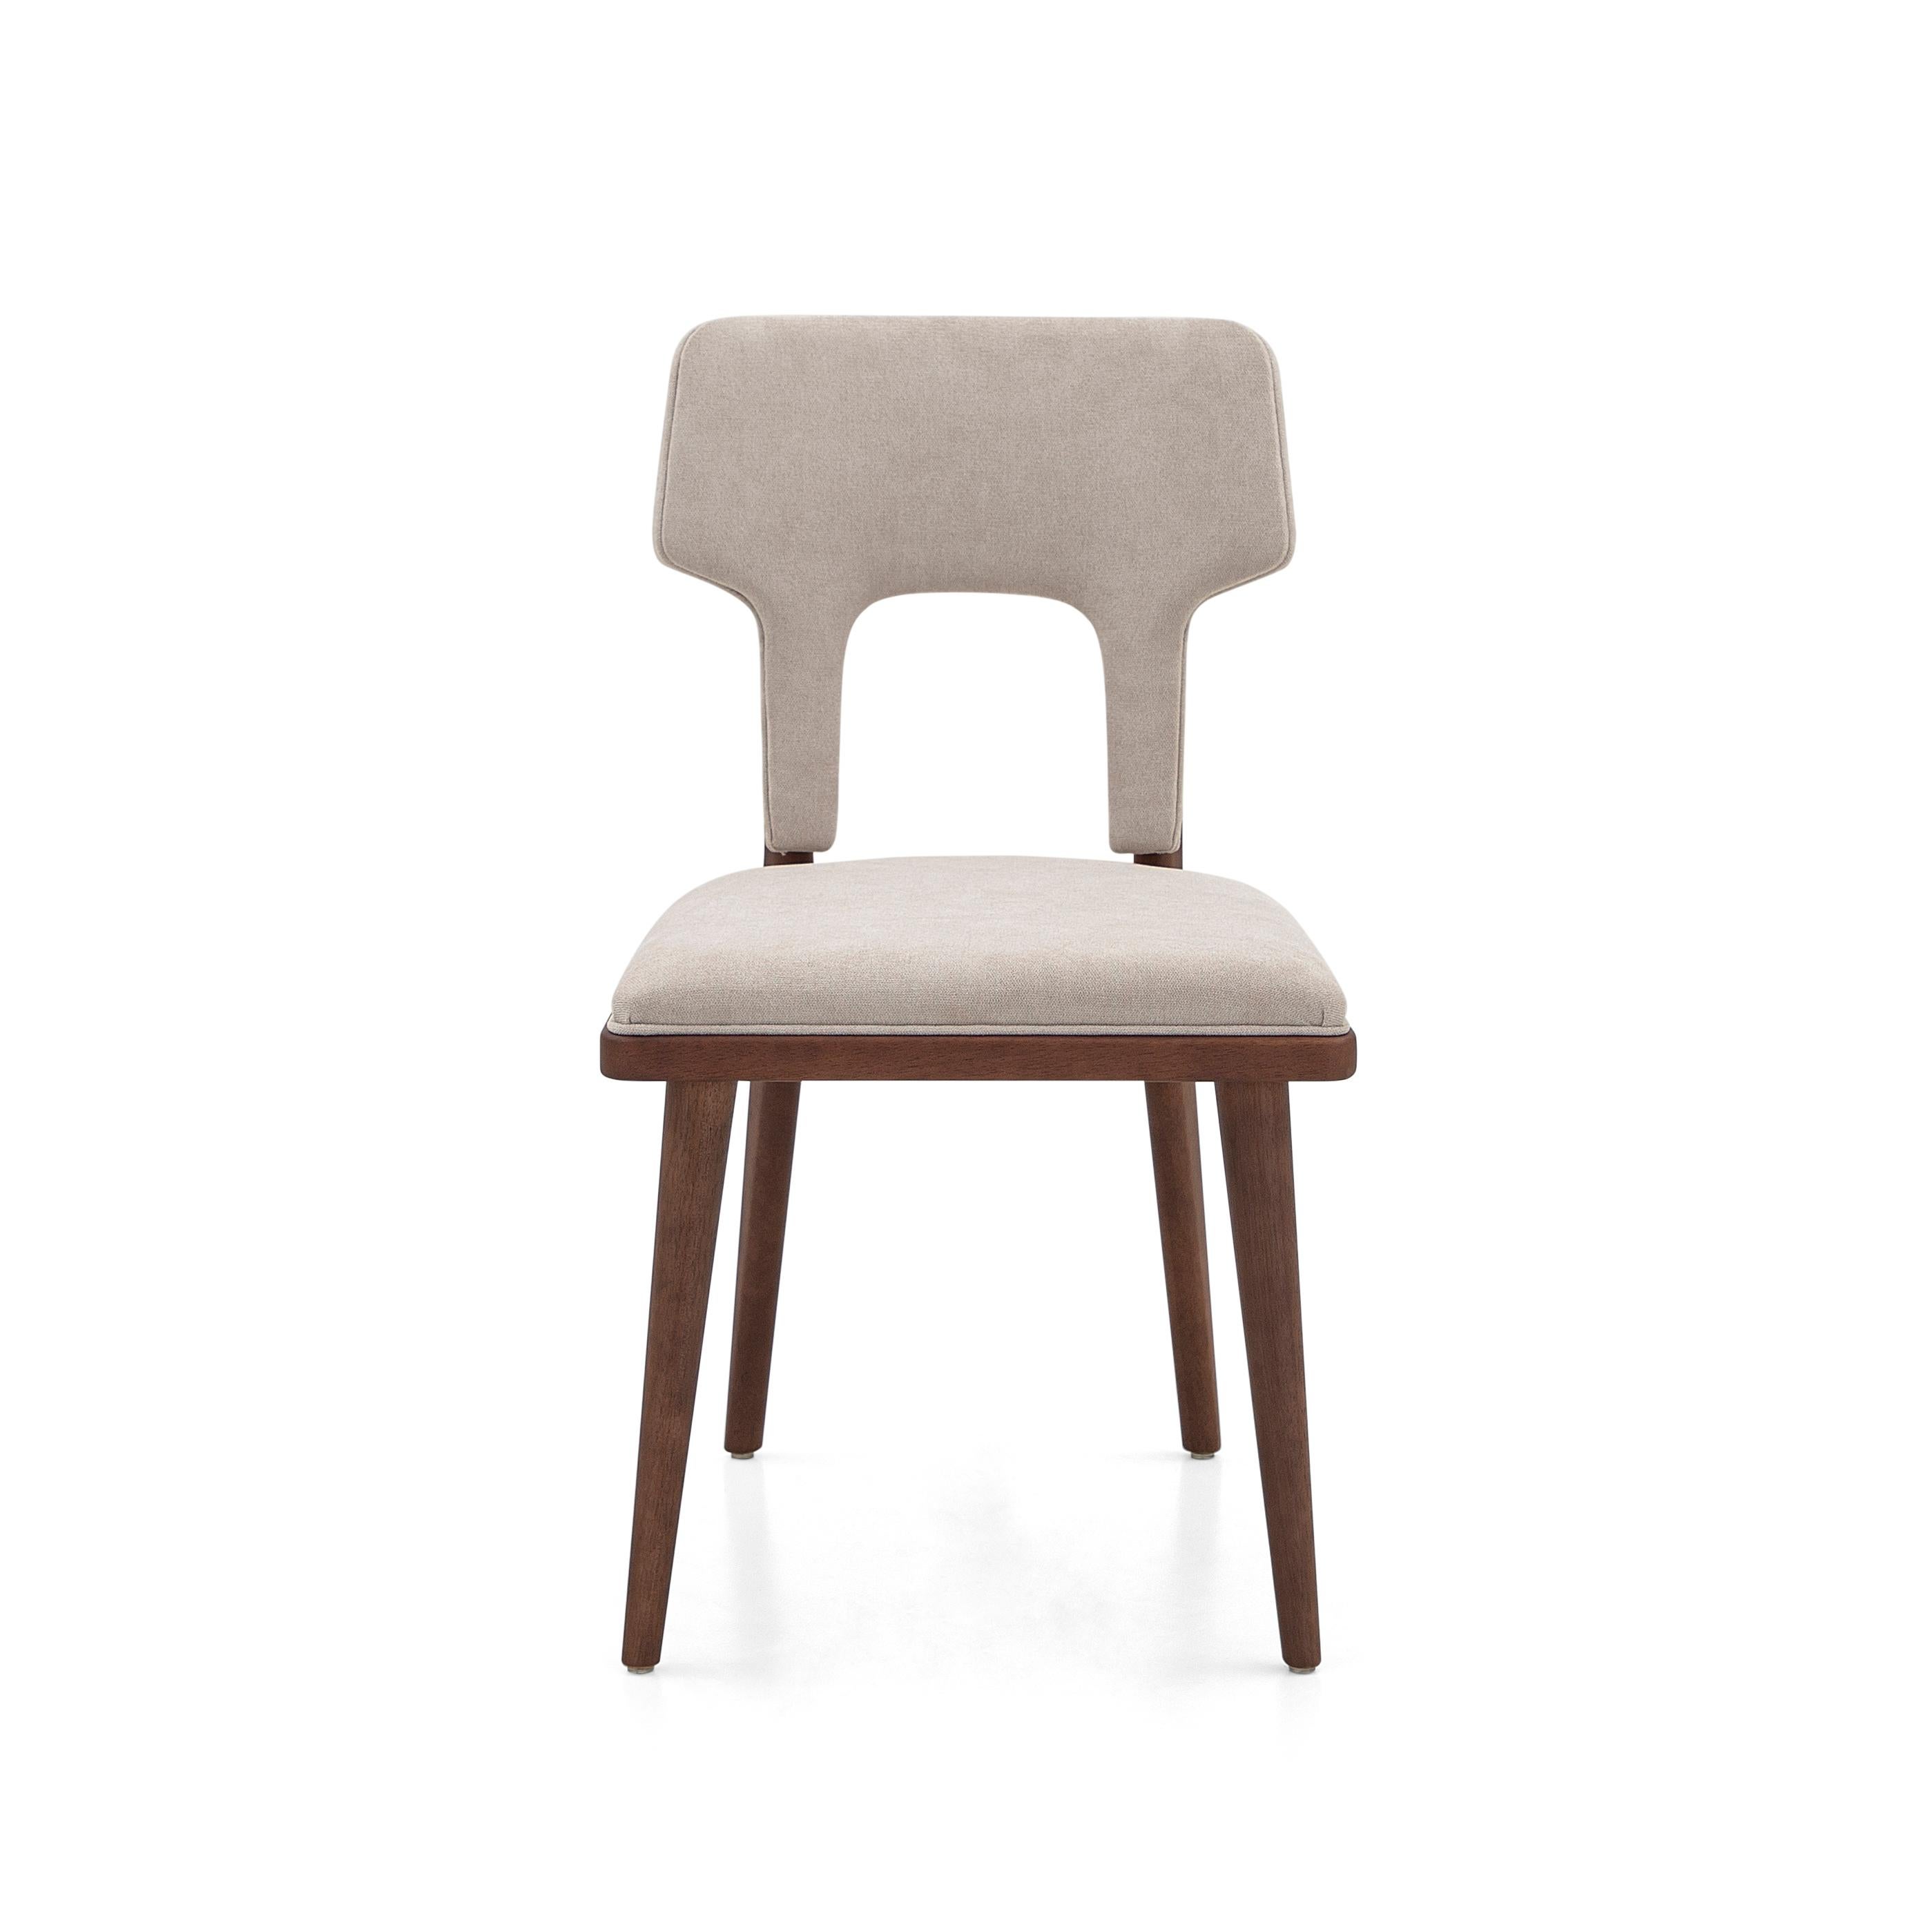 La chaise de salle à manger Fork a été fabriquée par notre équipe Uultis avec un tissu beige clair et une finition Uultis en bois de noyer pour les pieds. Notre formidable équipe chez Uultis a pensé à chaque petit détail pour que cette chaise de